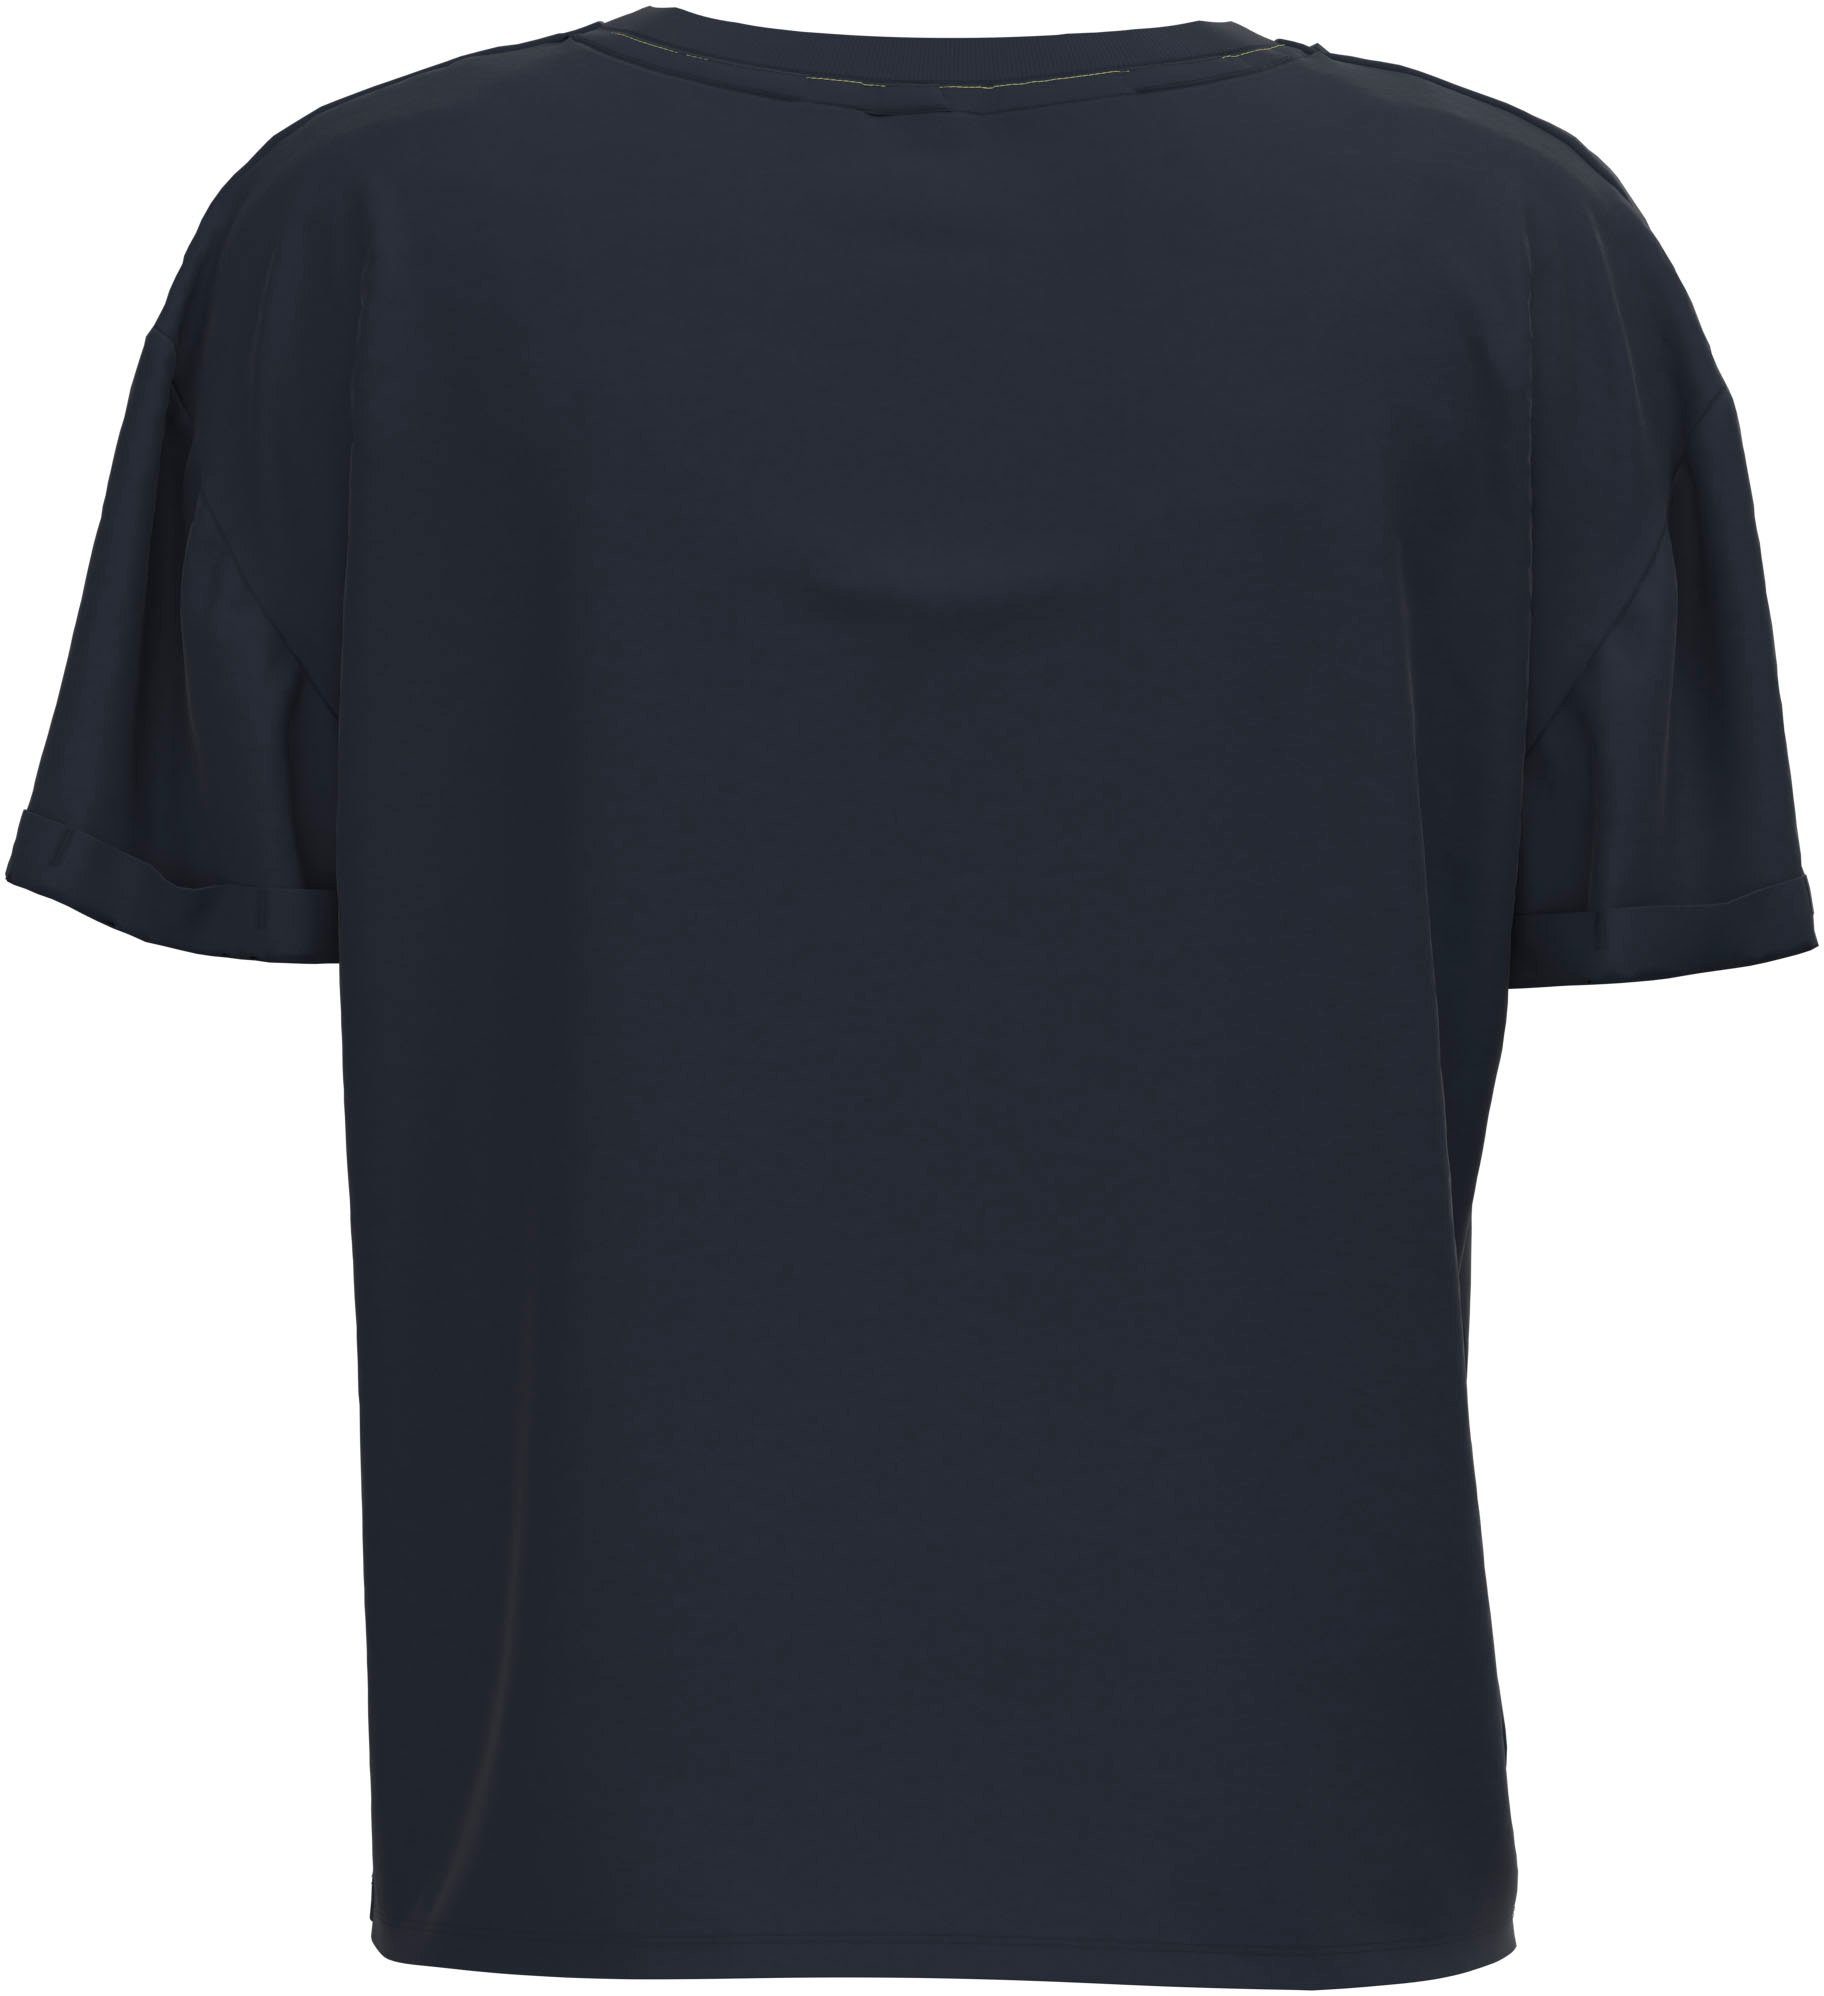 Passform oversized markentypischem 594DULWICH mit T-Shirt und Jeans Frontprint Pepe in tollem